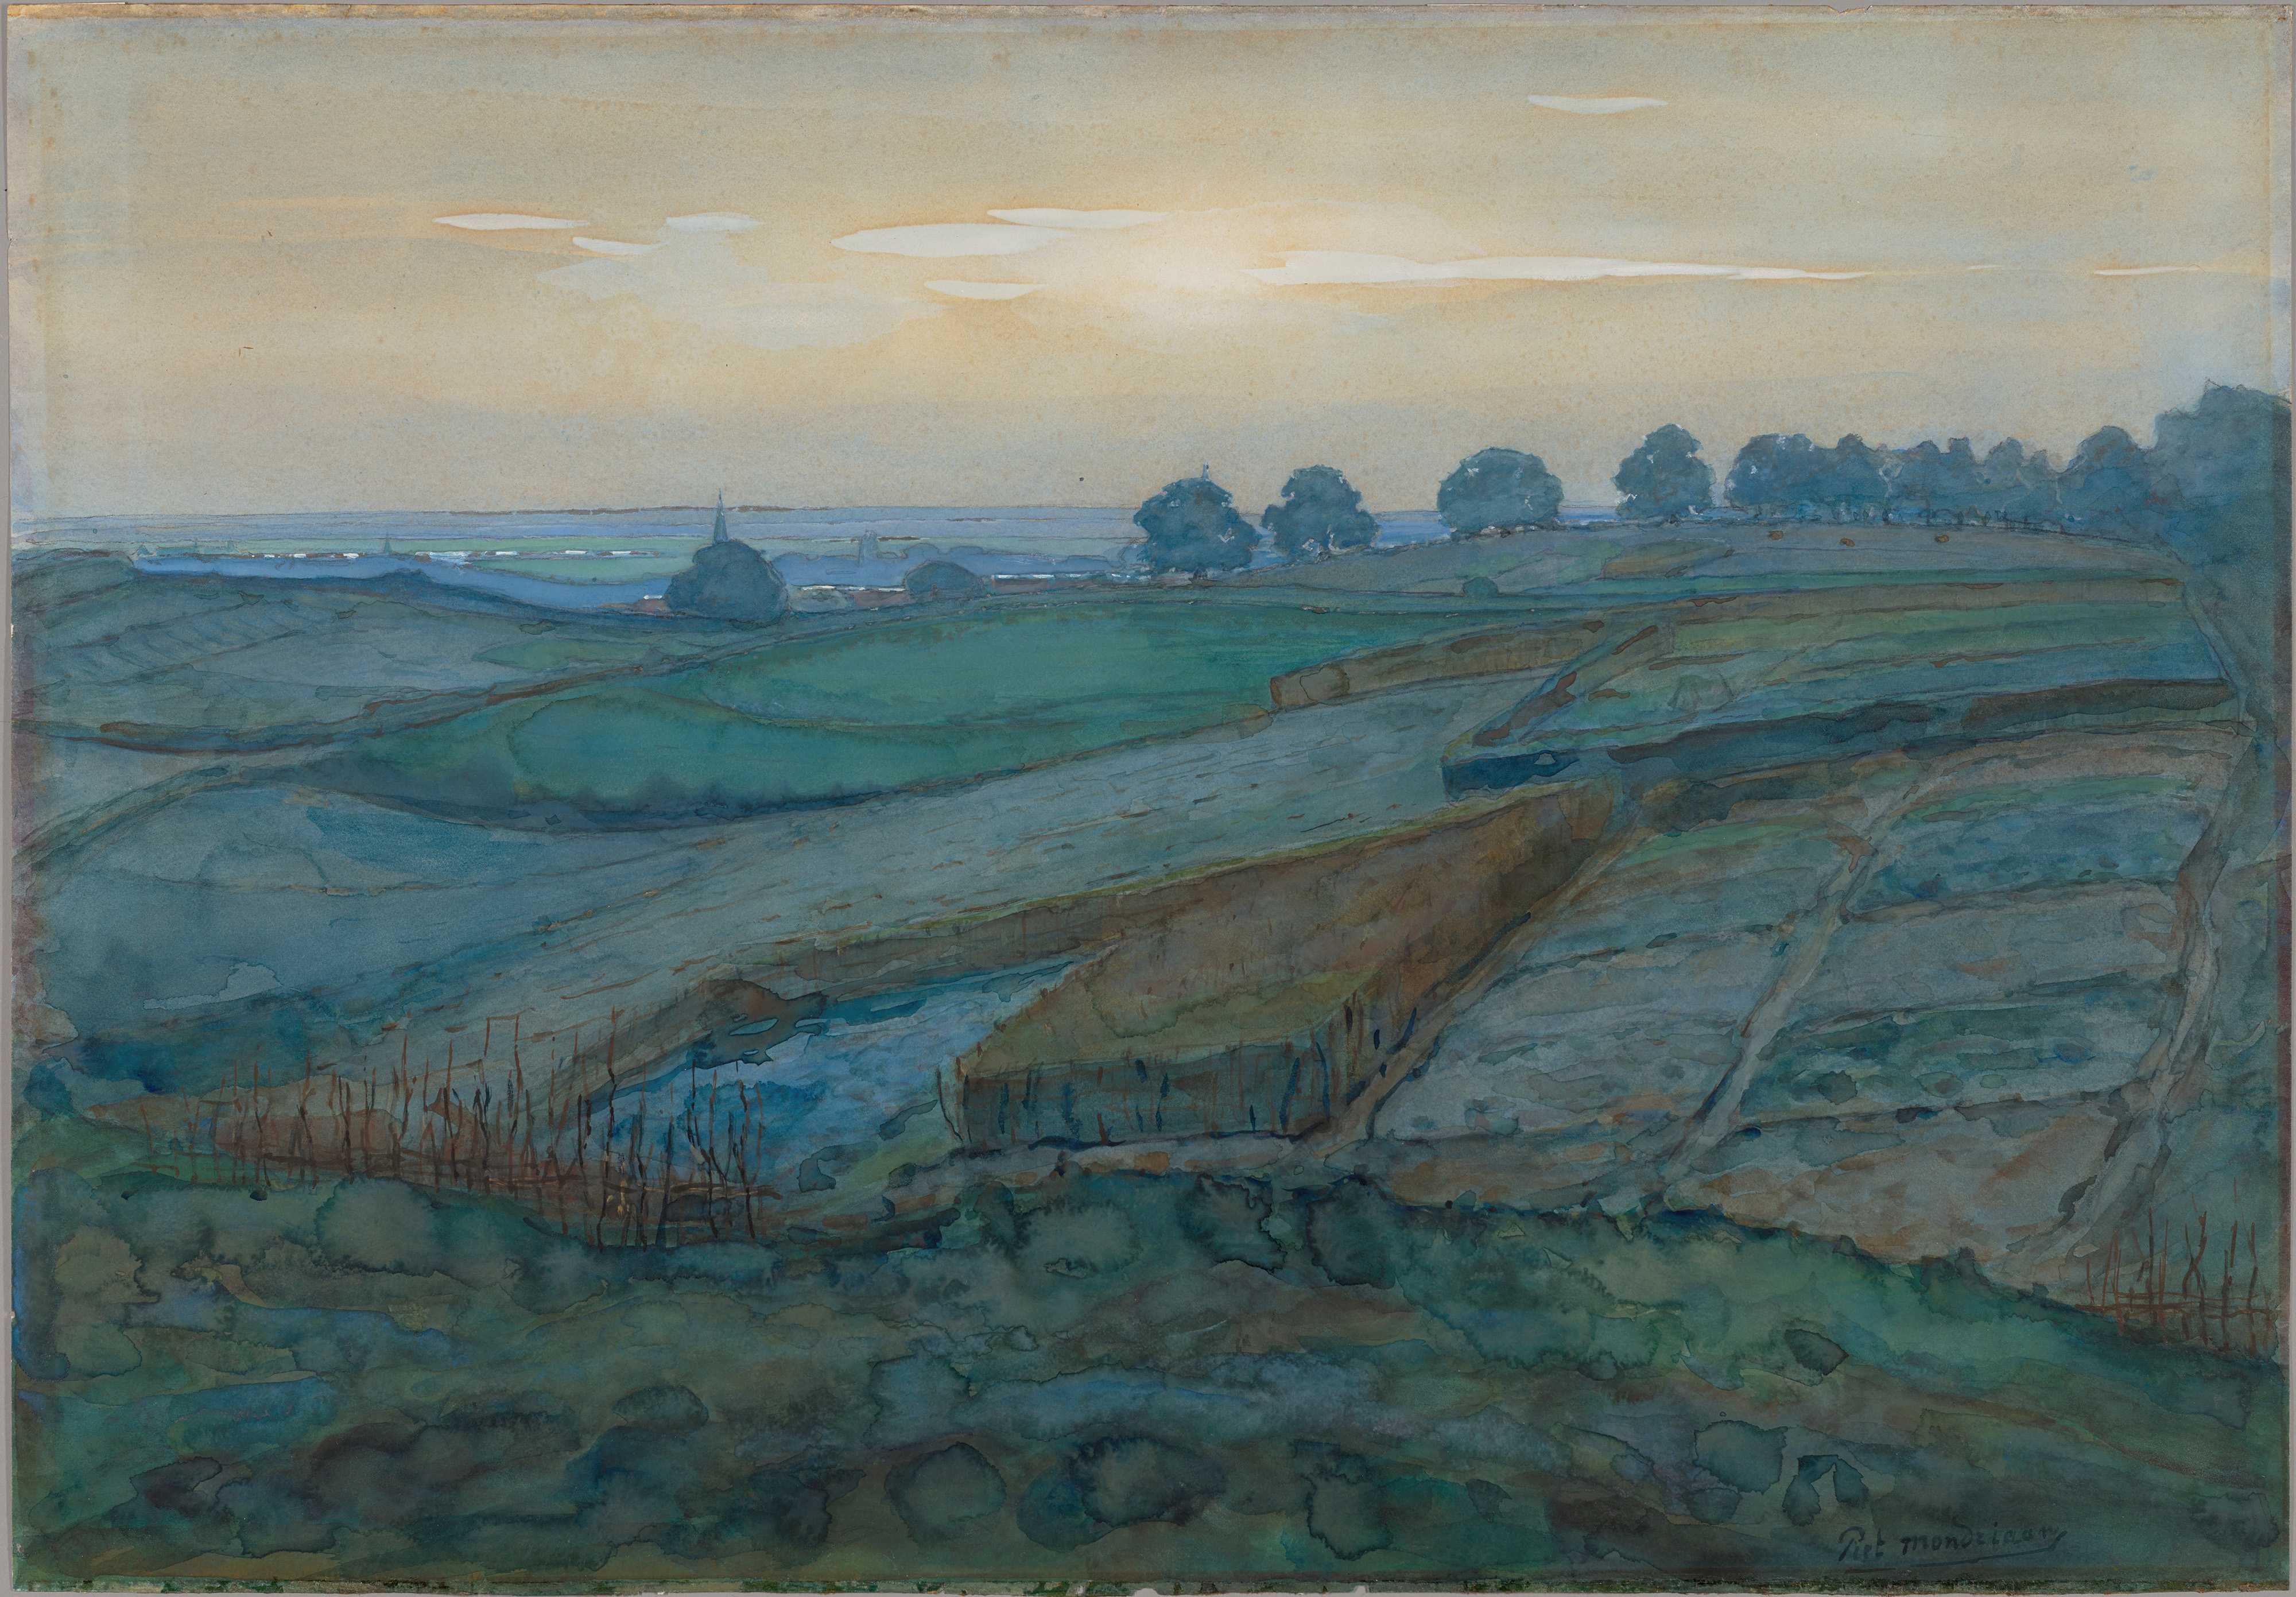 Find out more about Piet Mondrian - Landscape near Arnhem